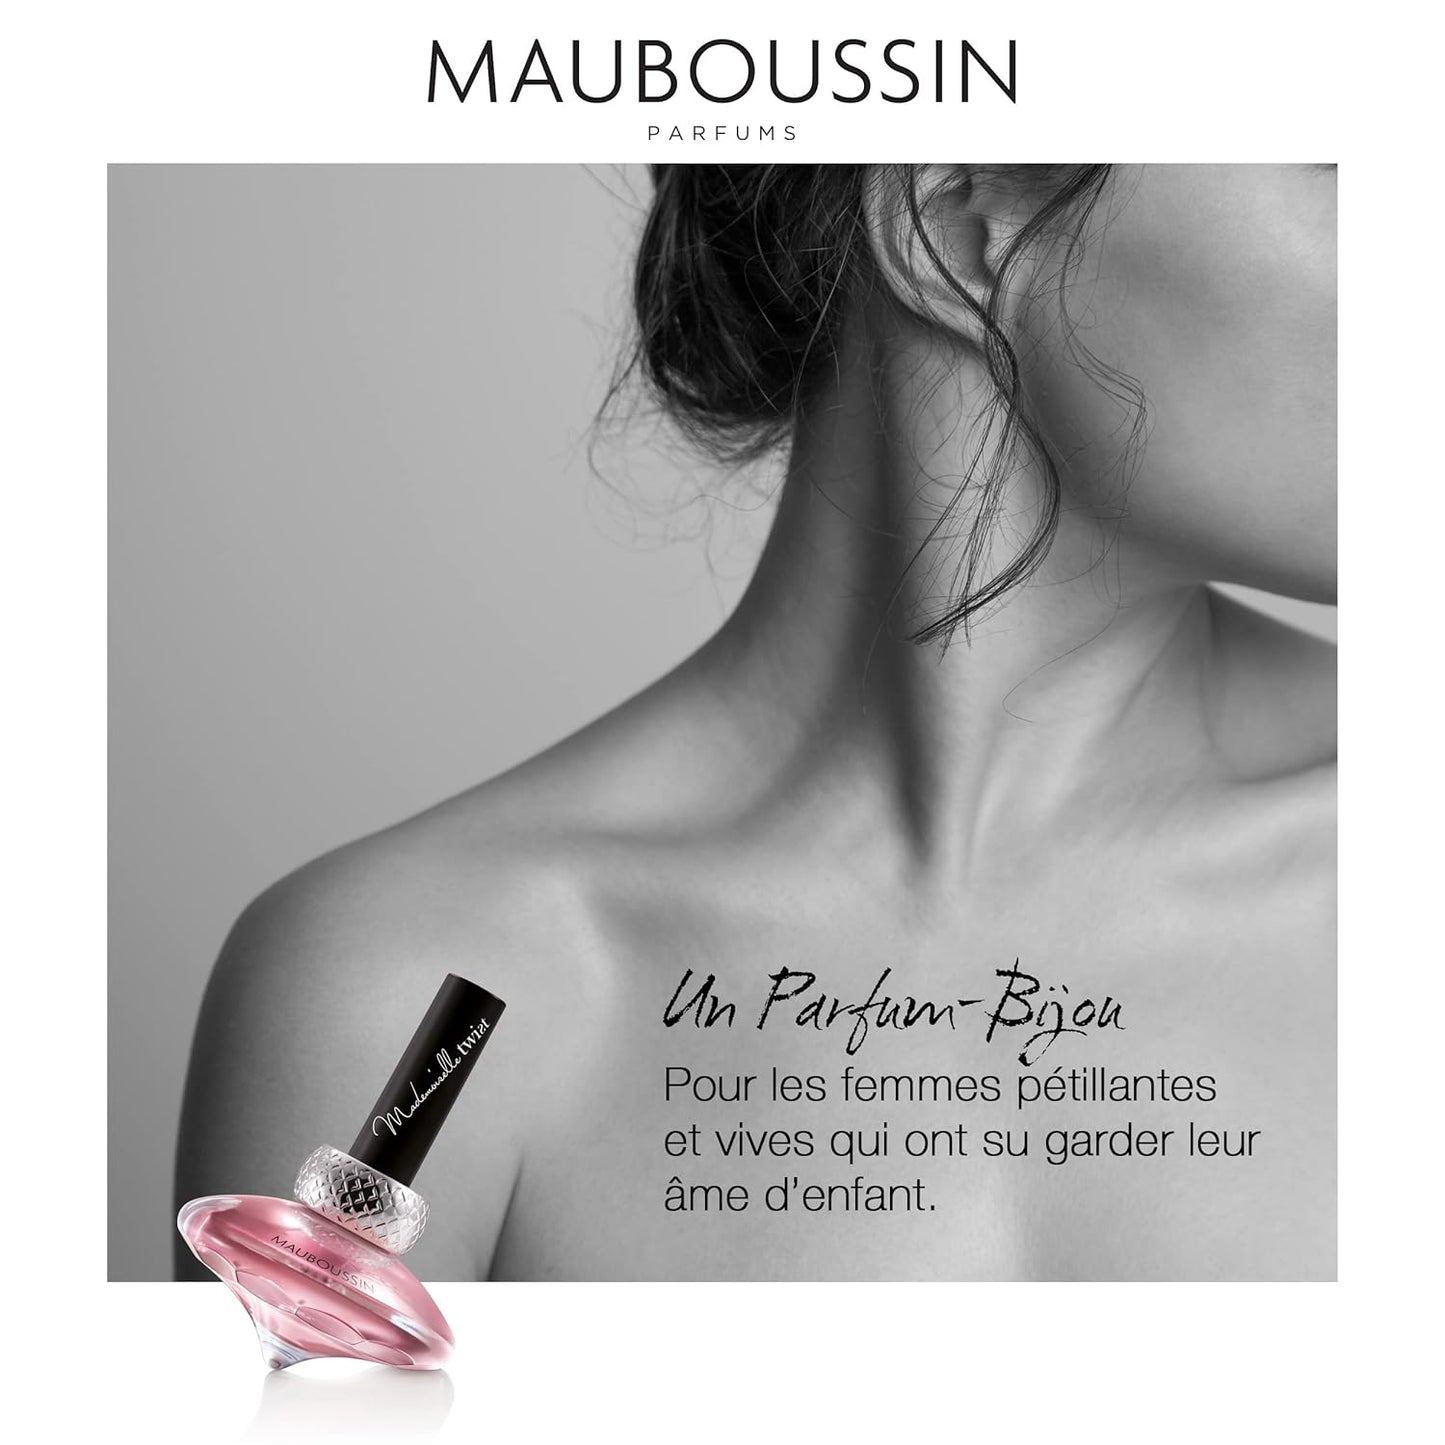 Mauboussin - Mademoiselle Twist 90ml (3 Fl Oz) - Eau de Parfum for Women - Floral, Oriental & Gourmand Scents